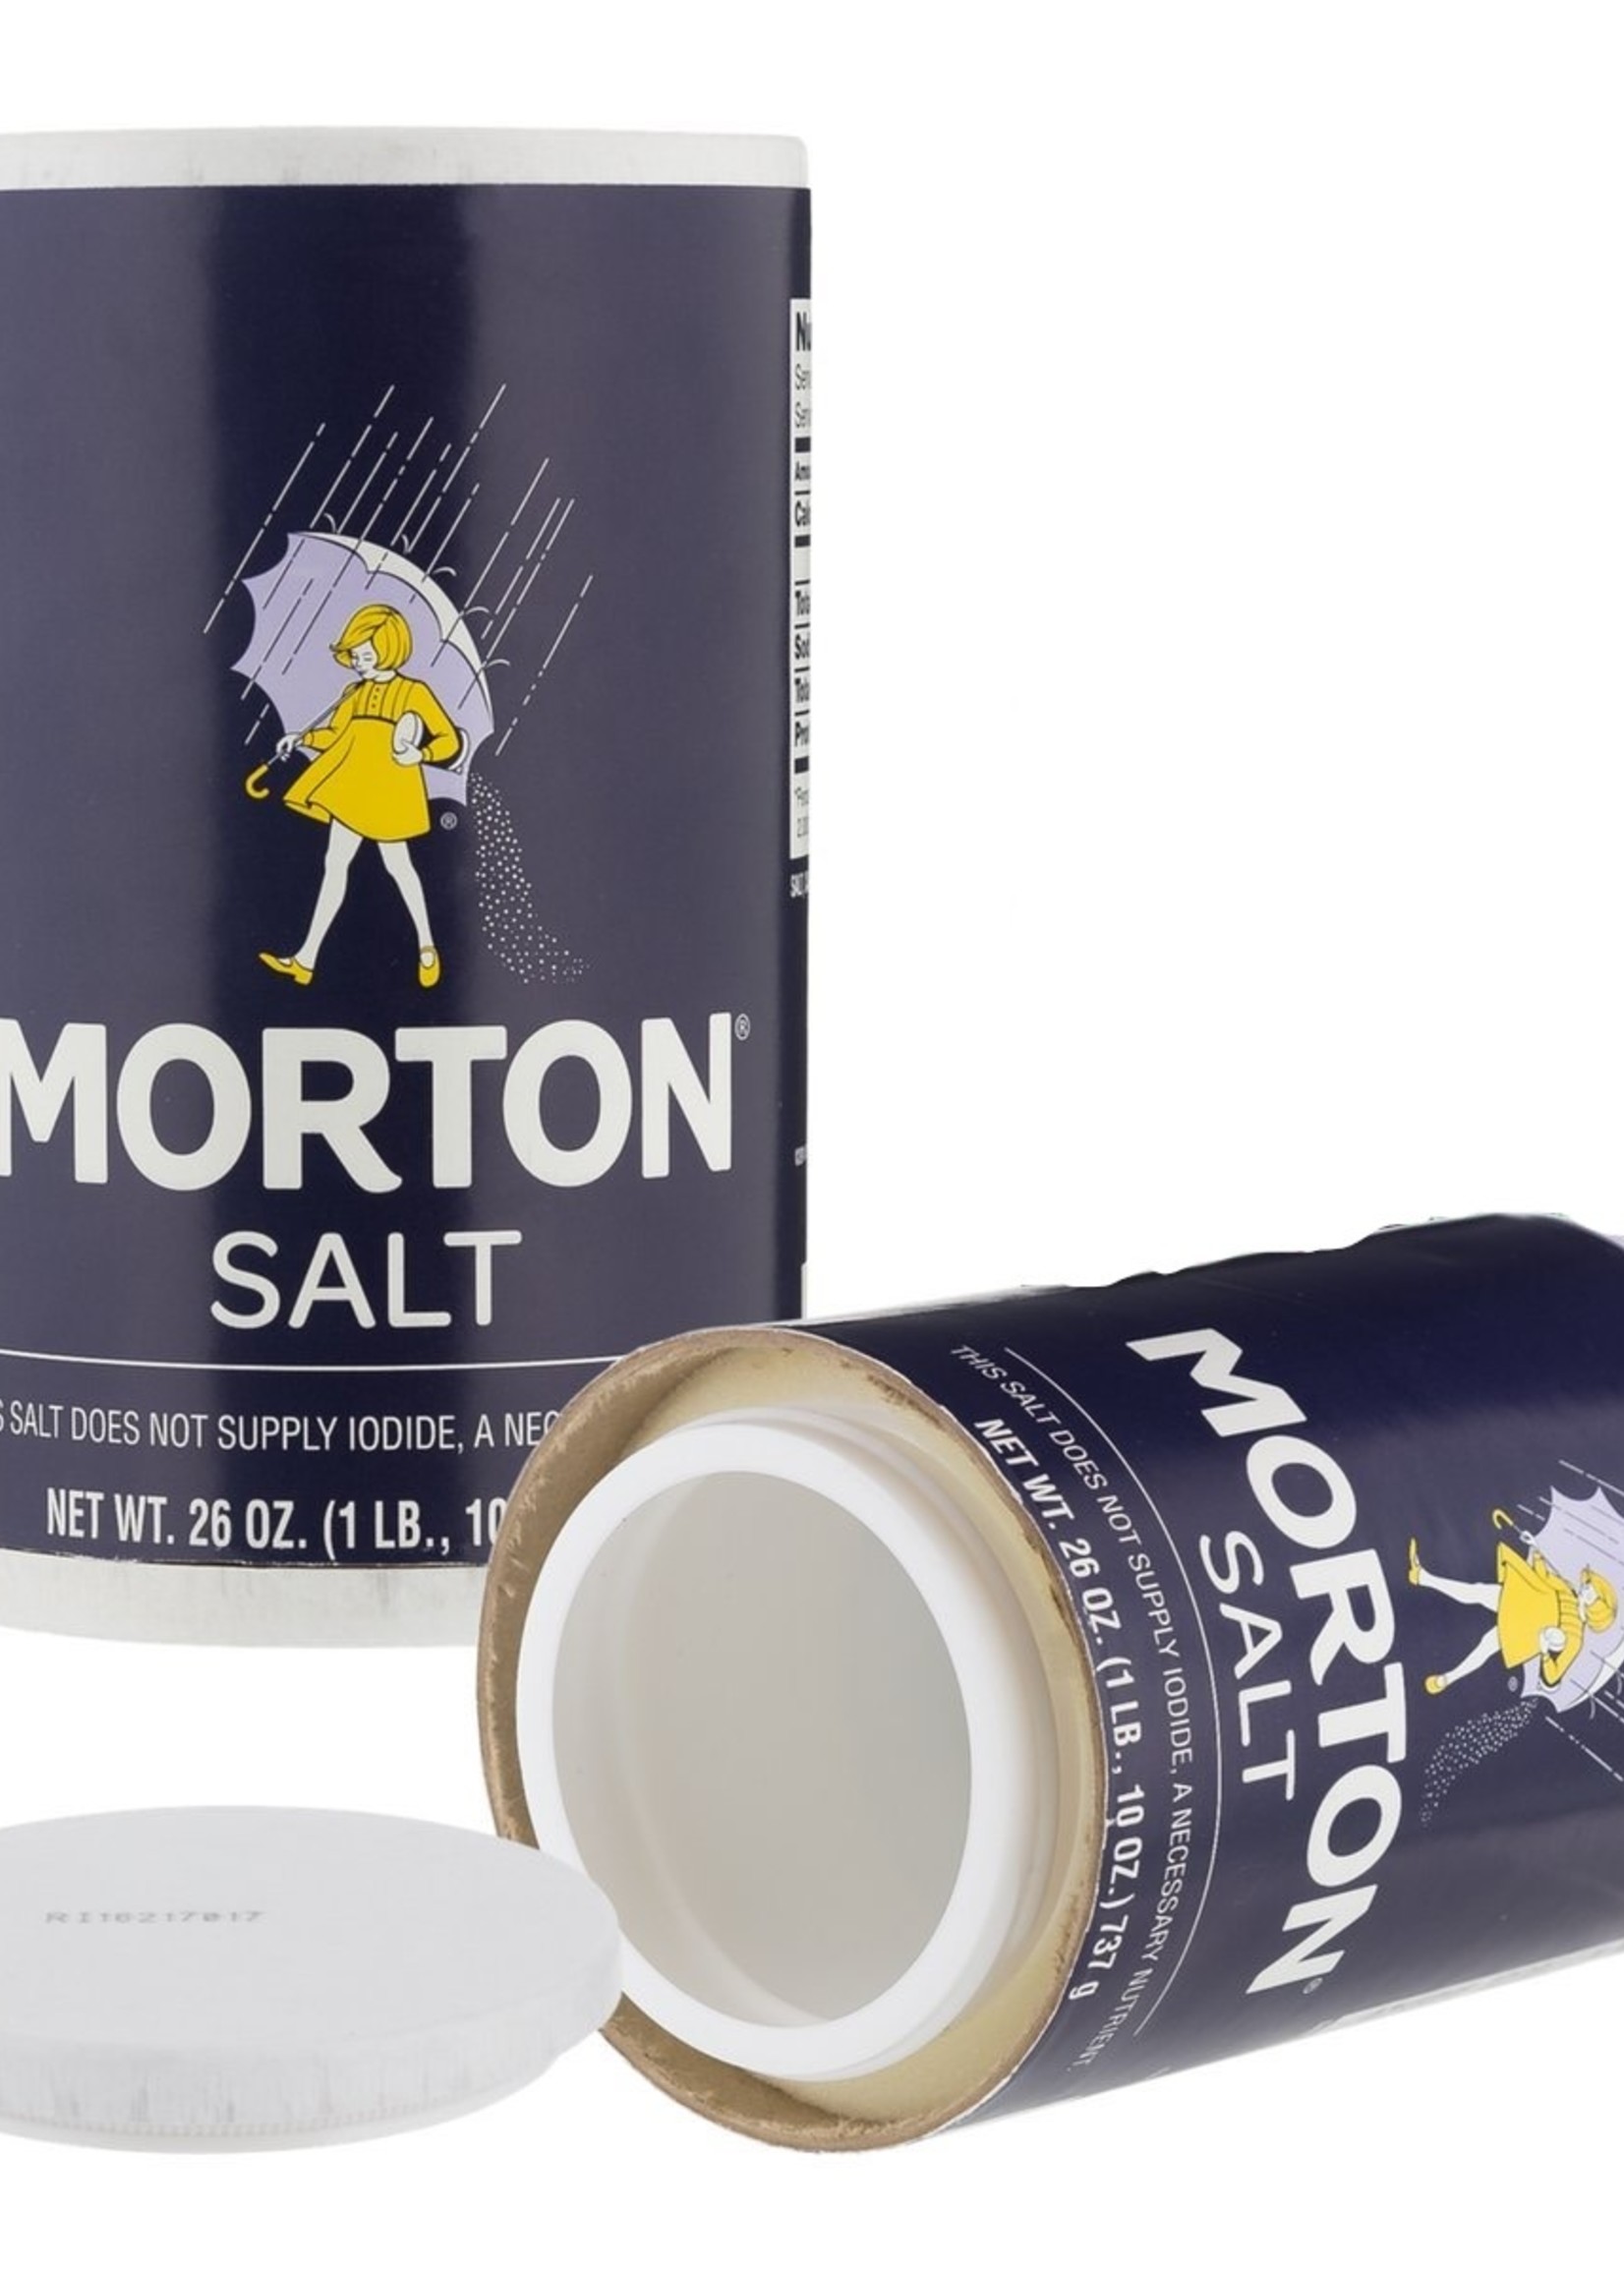 Morton Salt Security Cansafe